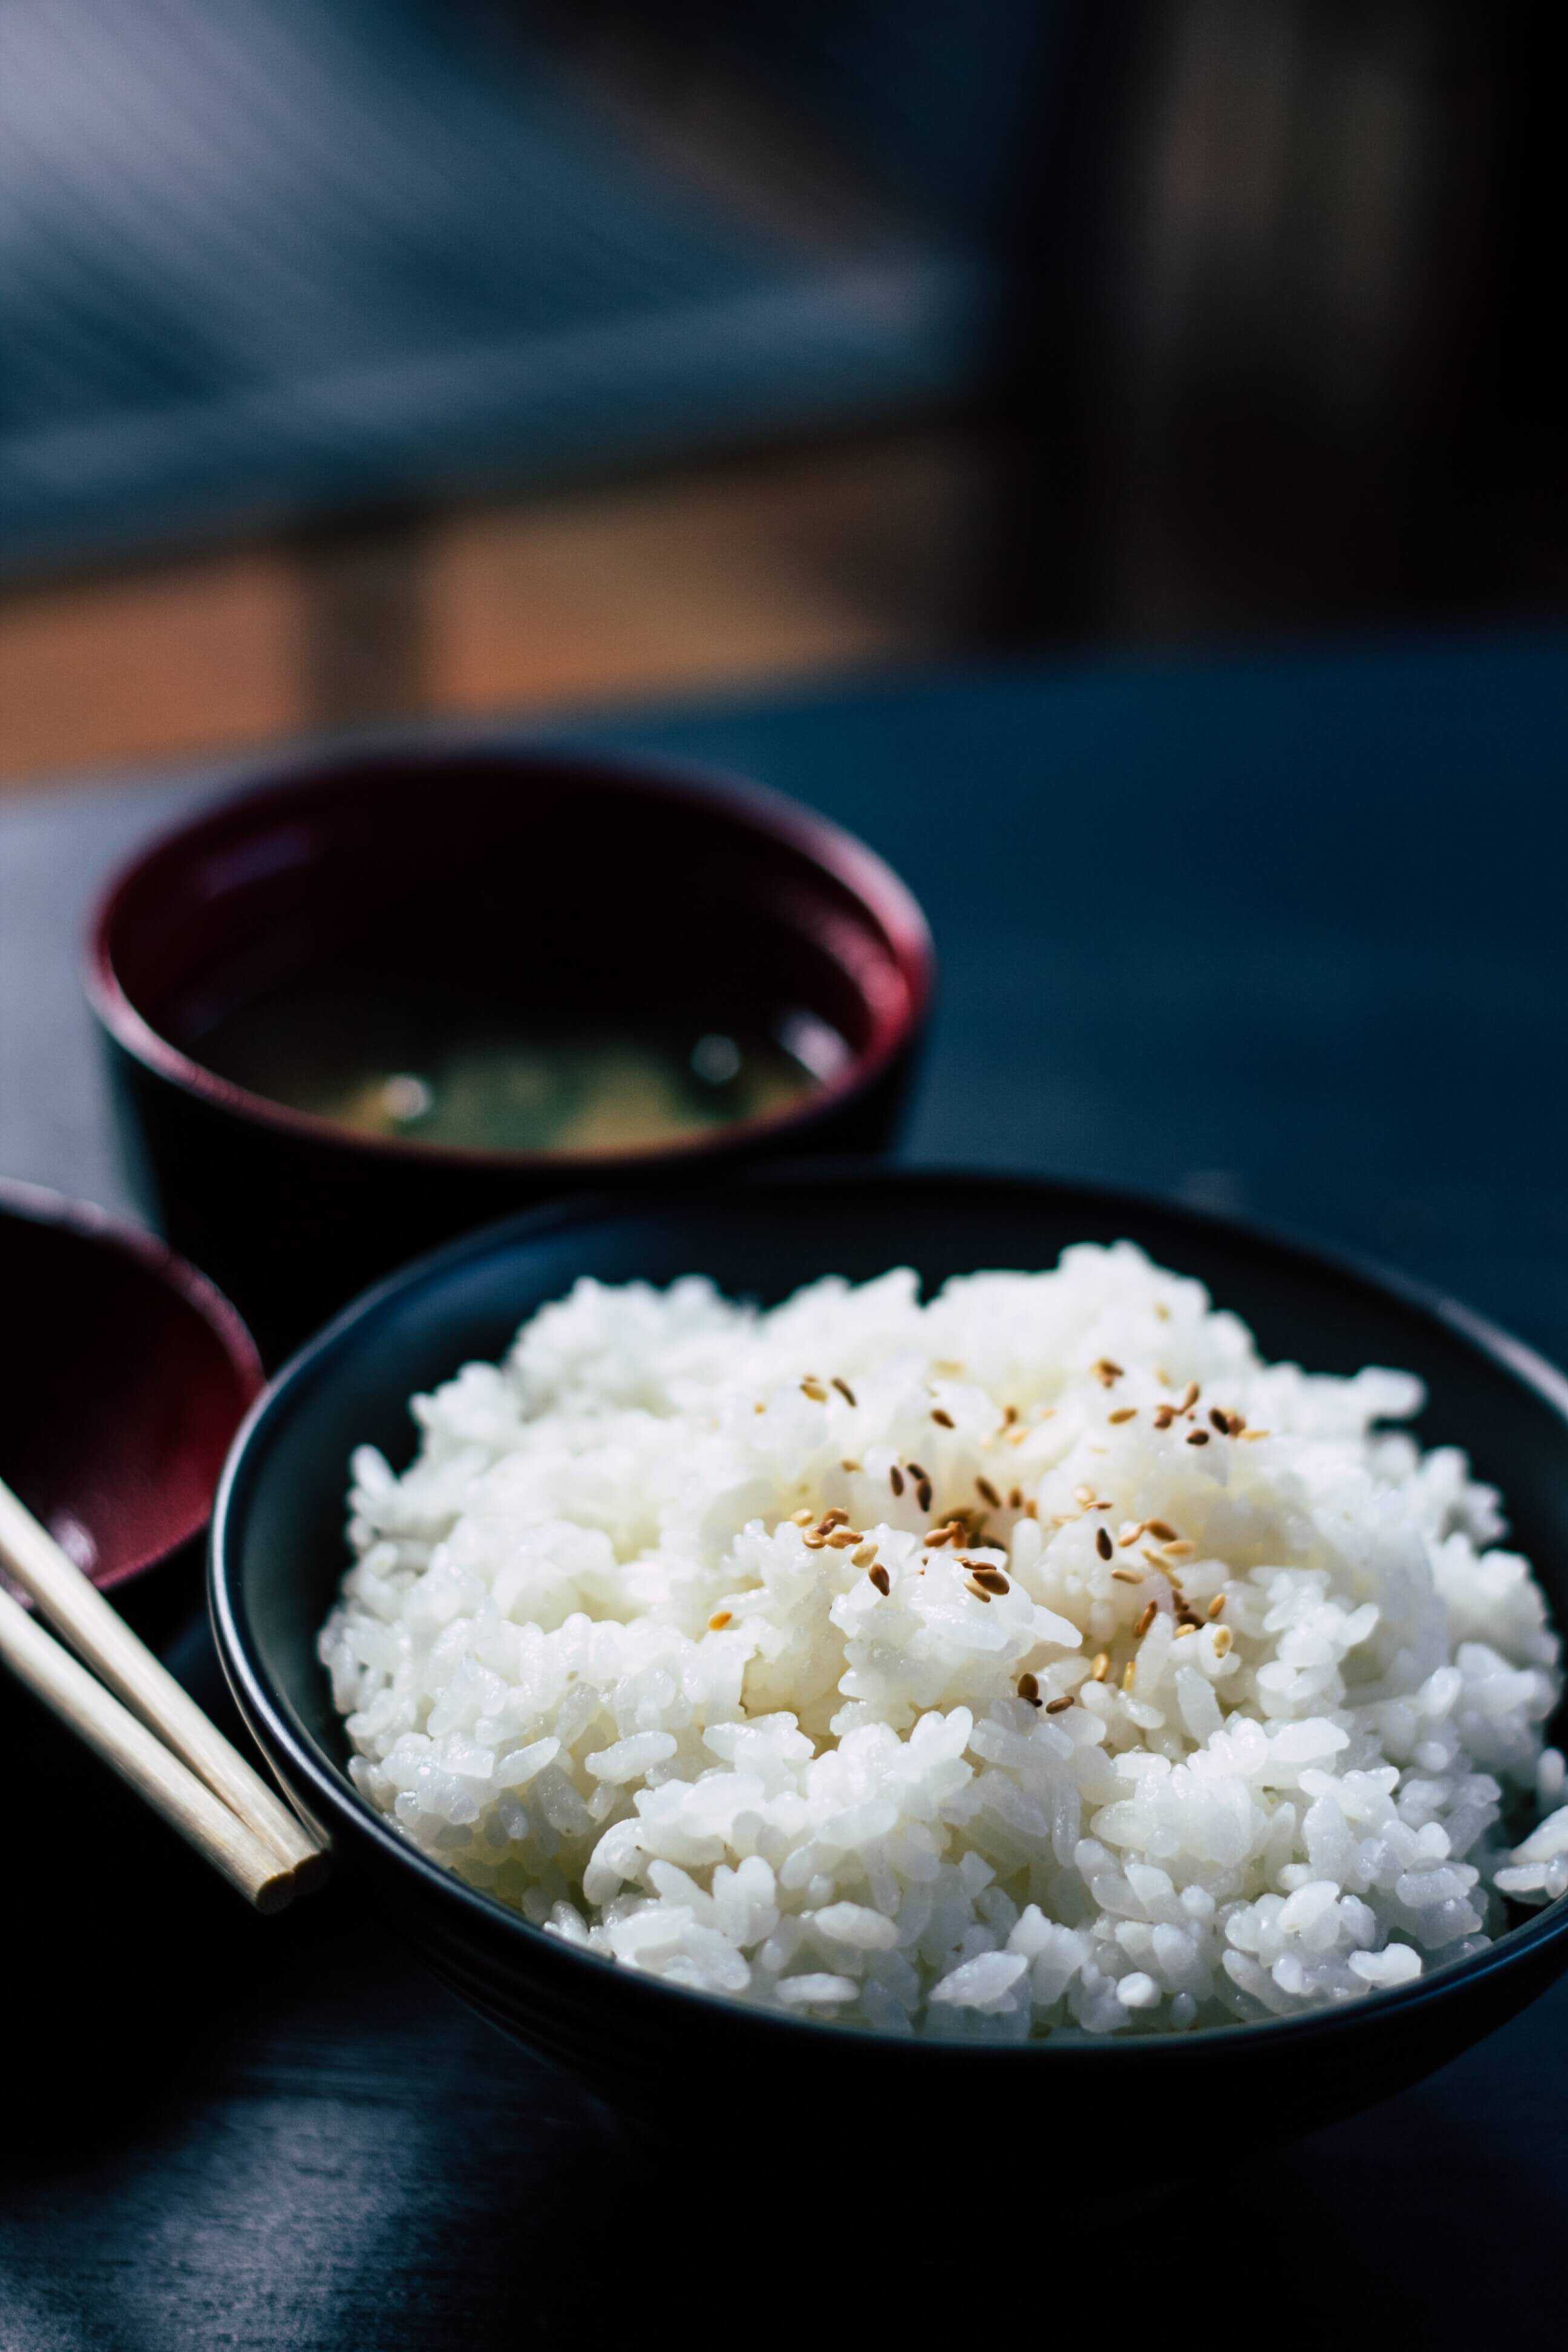 ryža - mgg vitchakorn 527292 unsplash - V hlavnej úlohe ryža